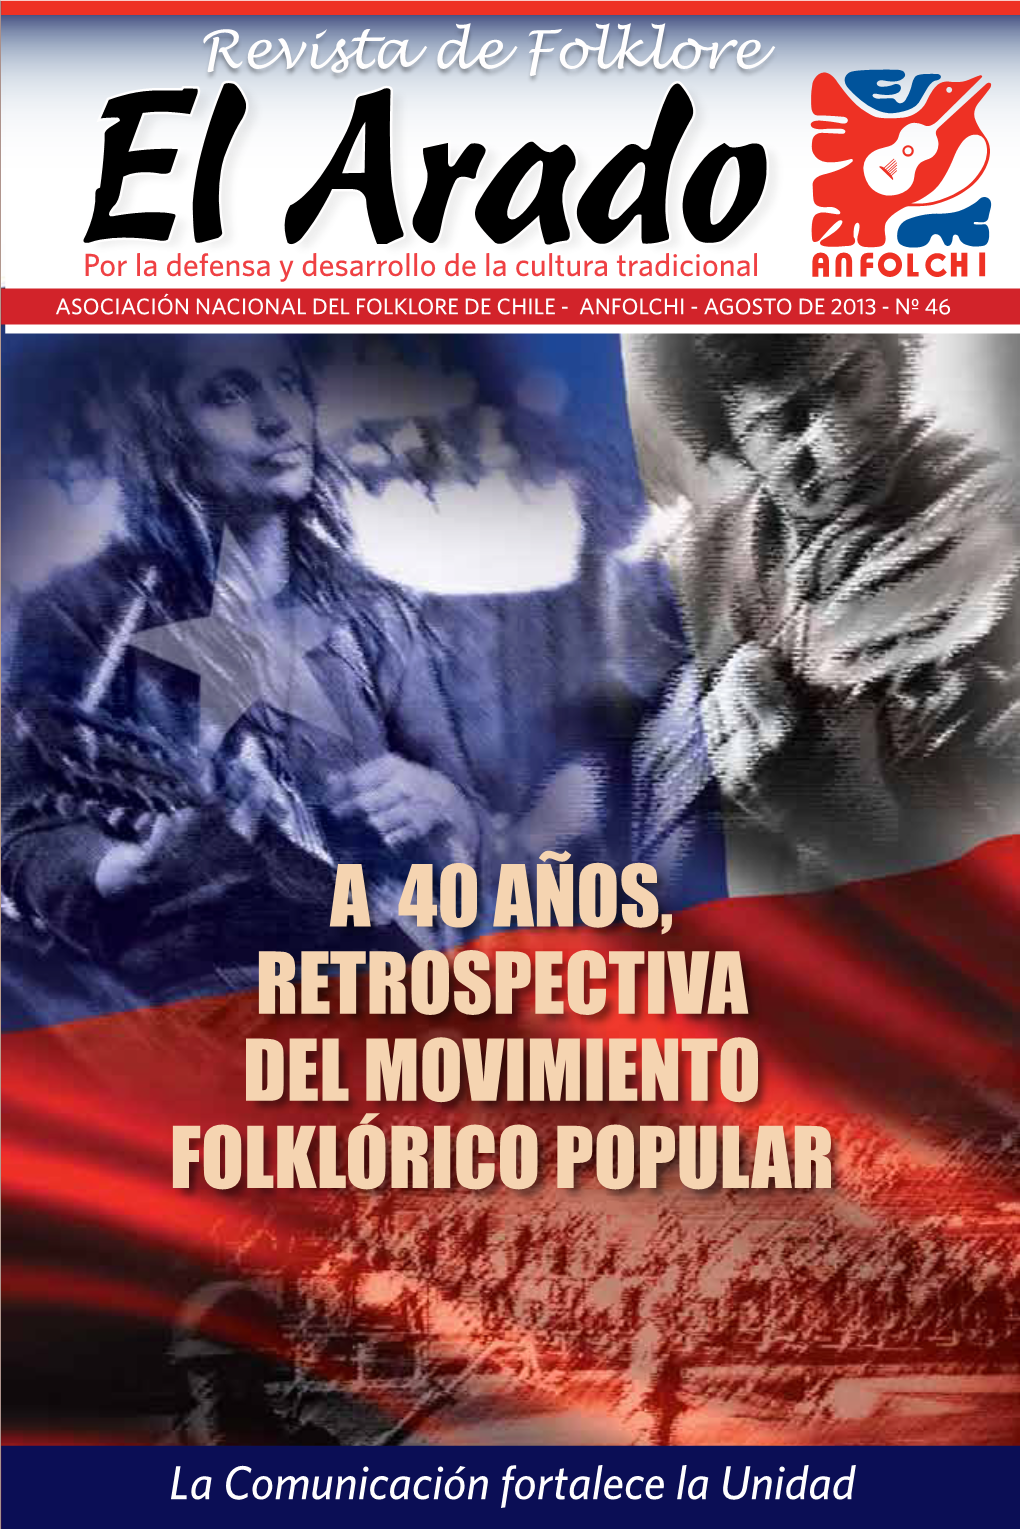 Ra Popular Por La Defensa Y Desarrollo De La Cultura Tradicional ASOCIACIÓN NACIONAL DEL FOLKLORE DE CHILE - ANFOLCHI - AGOSTO DE 2013 - Nº 46